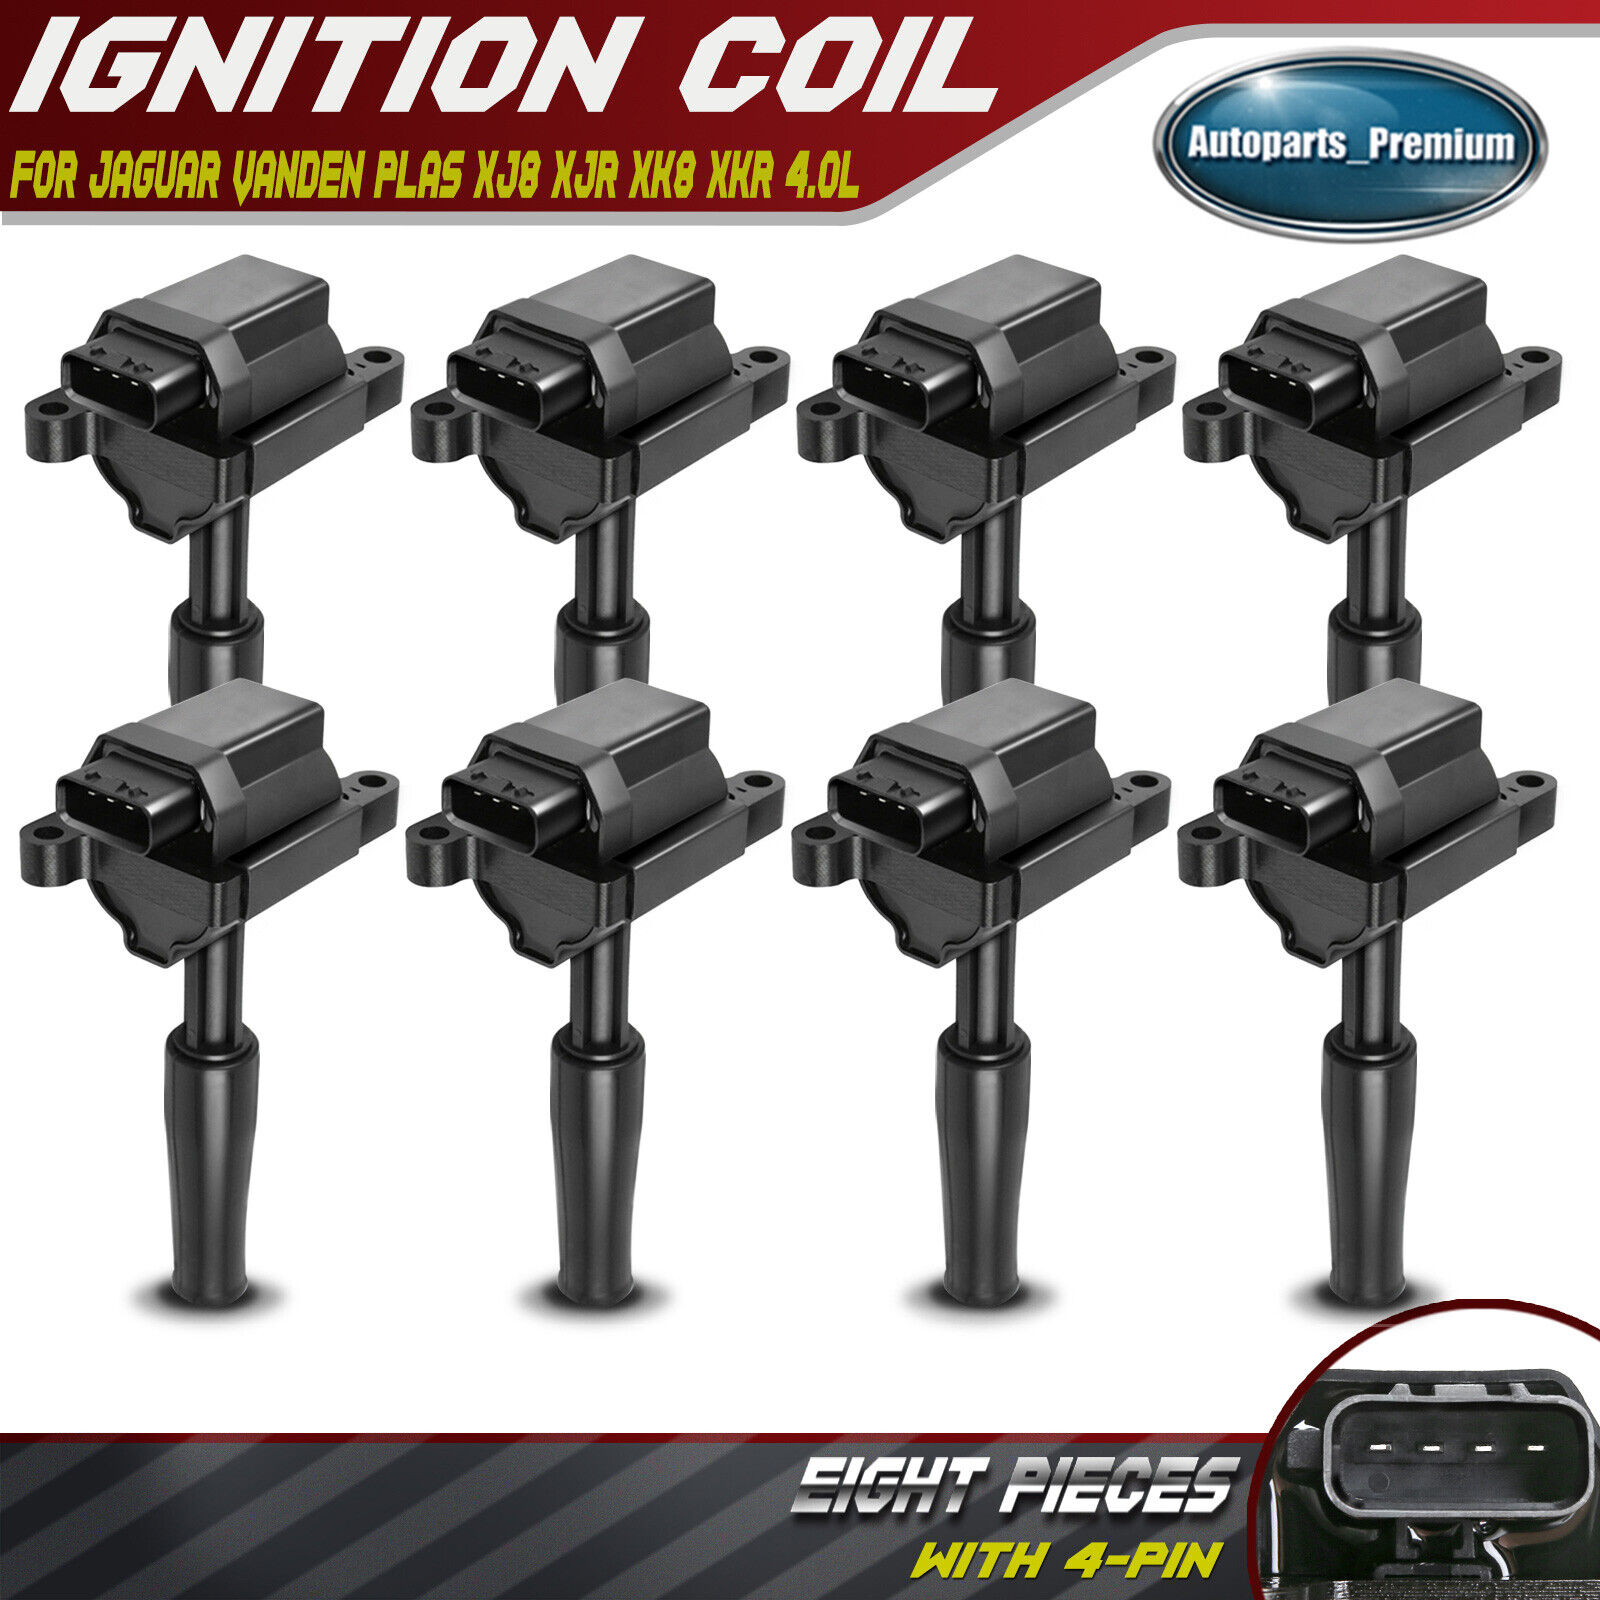 8x Ignition Coils Pack 4-Pin for Jaguar Vanden Plas XJ8 XJR XK8 XKR 1999-2003